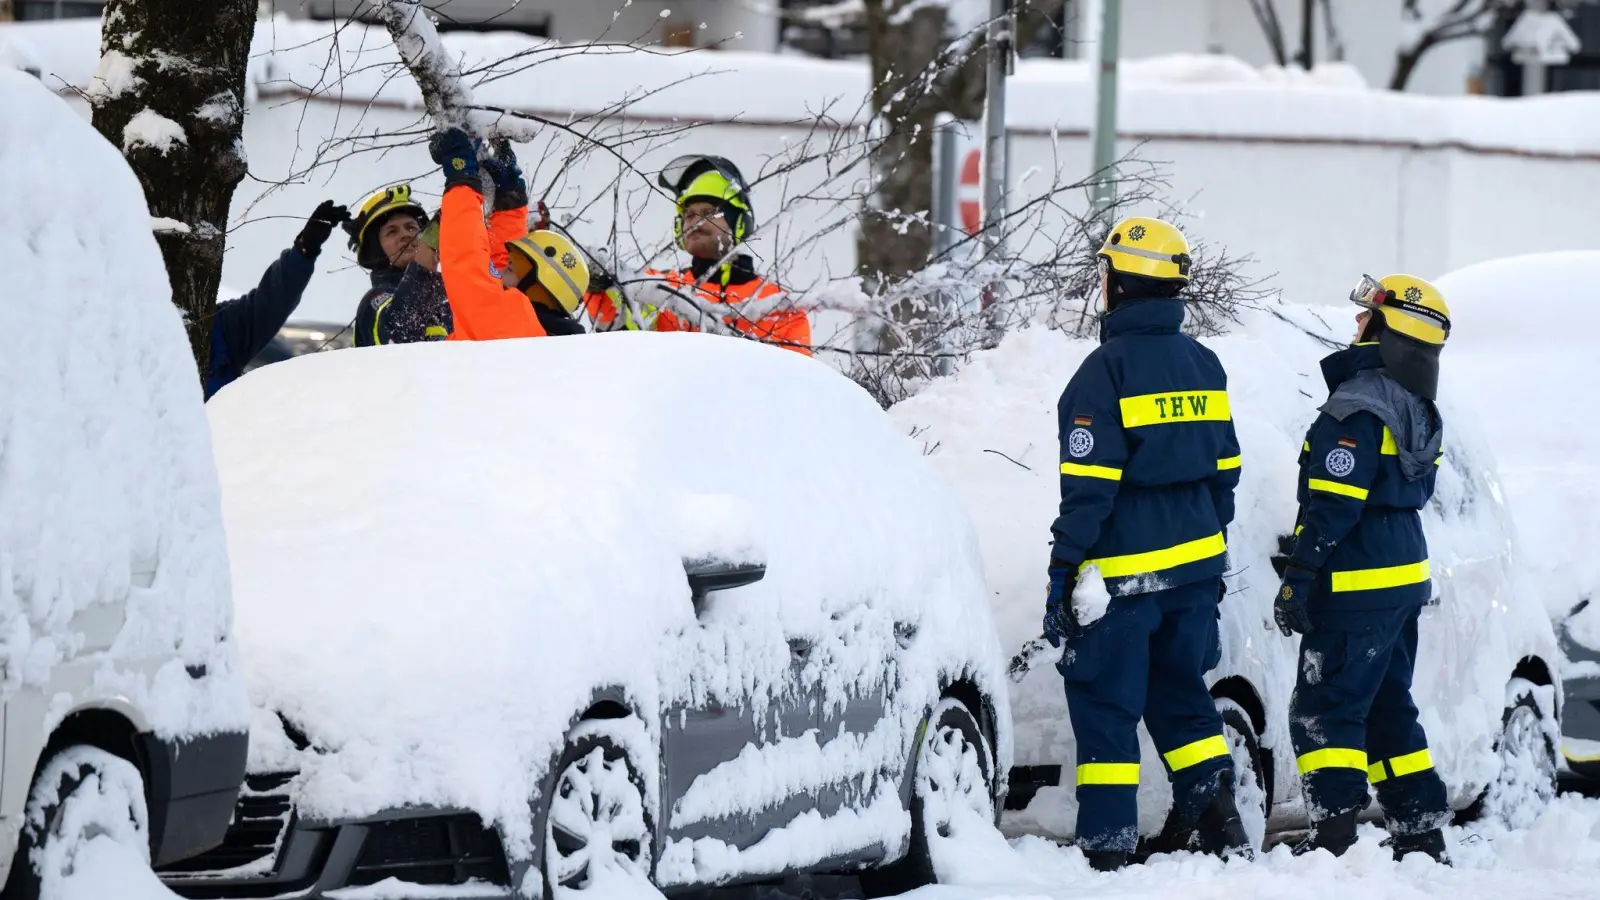 Einsatzkräfte des Technischen Hilfswerks (THW) kontrollieren in einer Straße durch die Schneelast beschädigte Bäume. (Foto: Sven Hoppe/dpa)